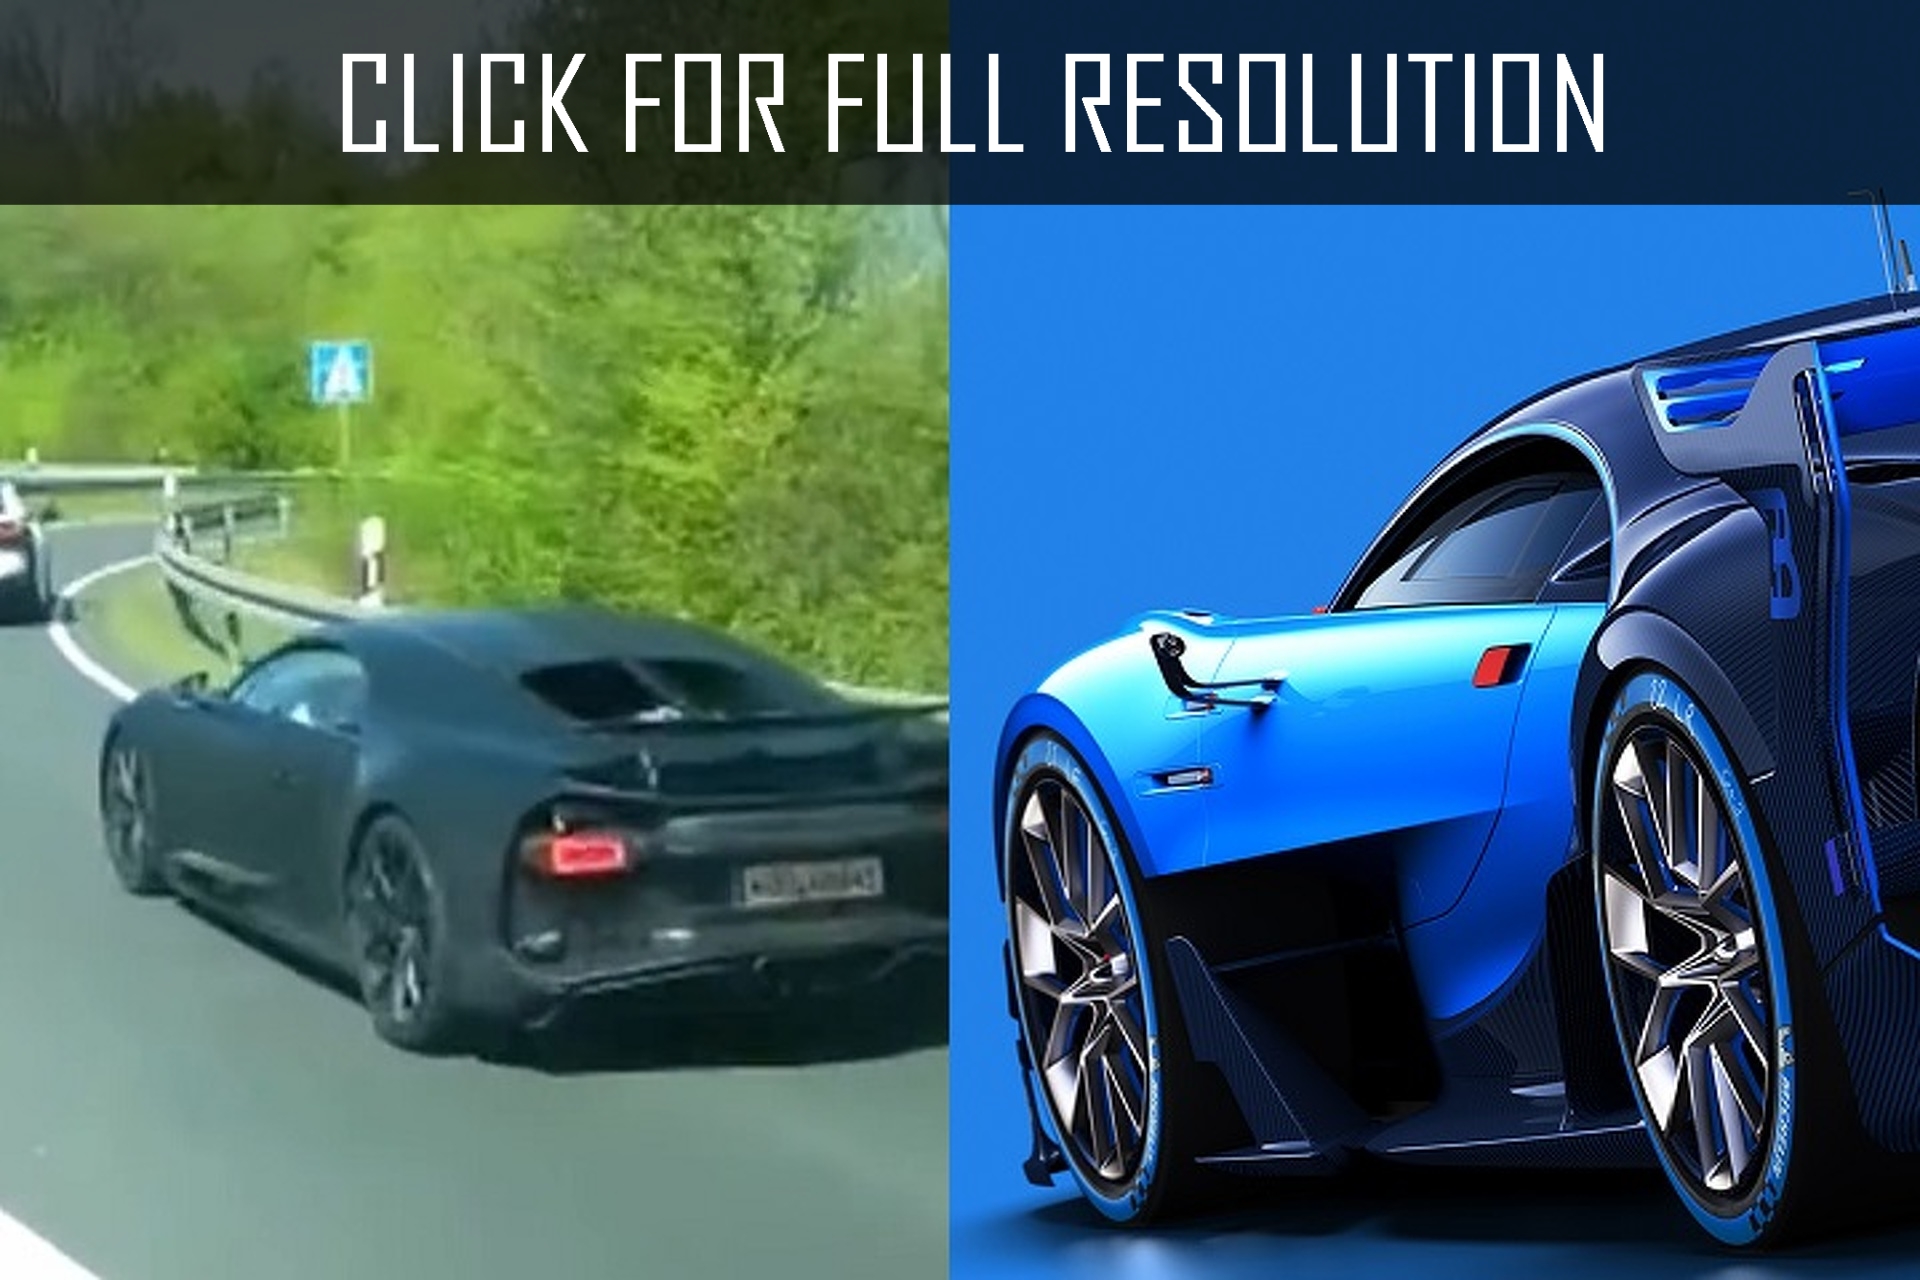 Bugatti Vision Gt